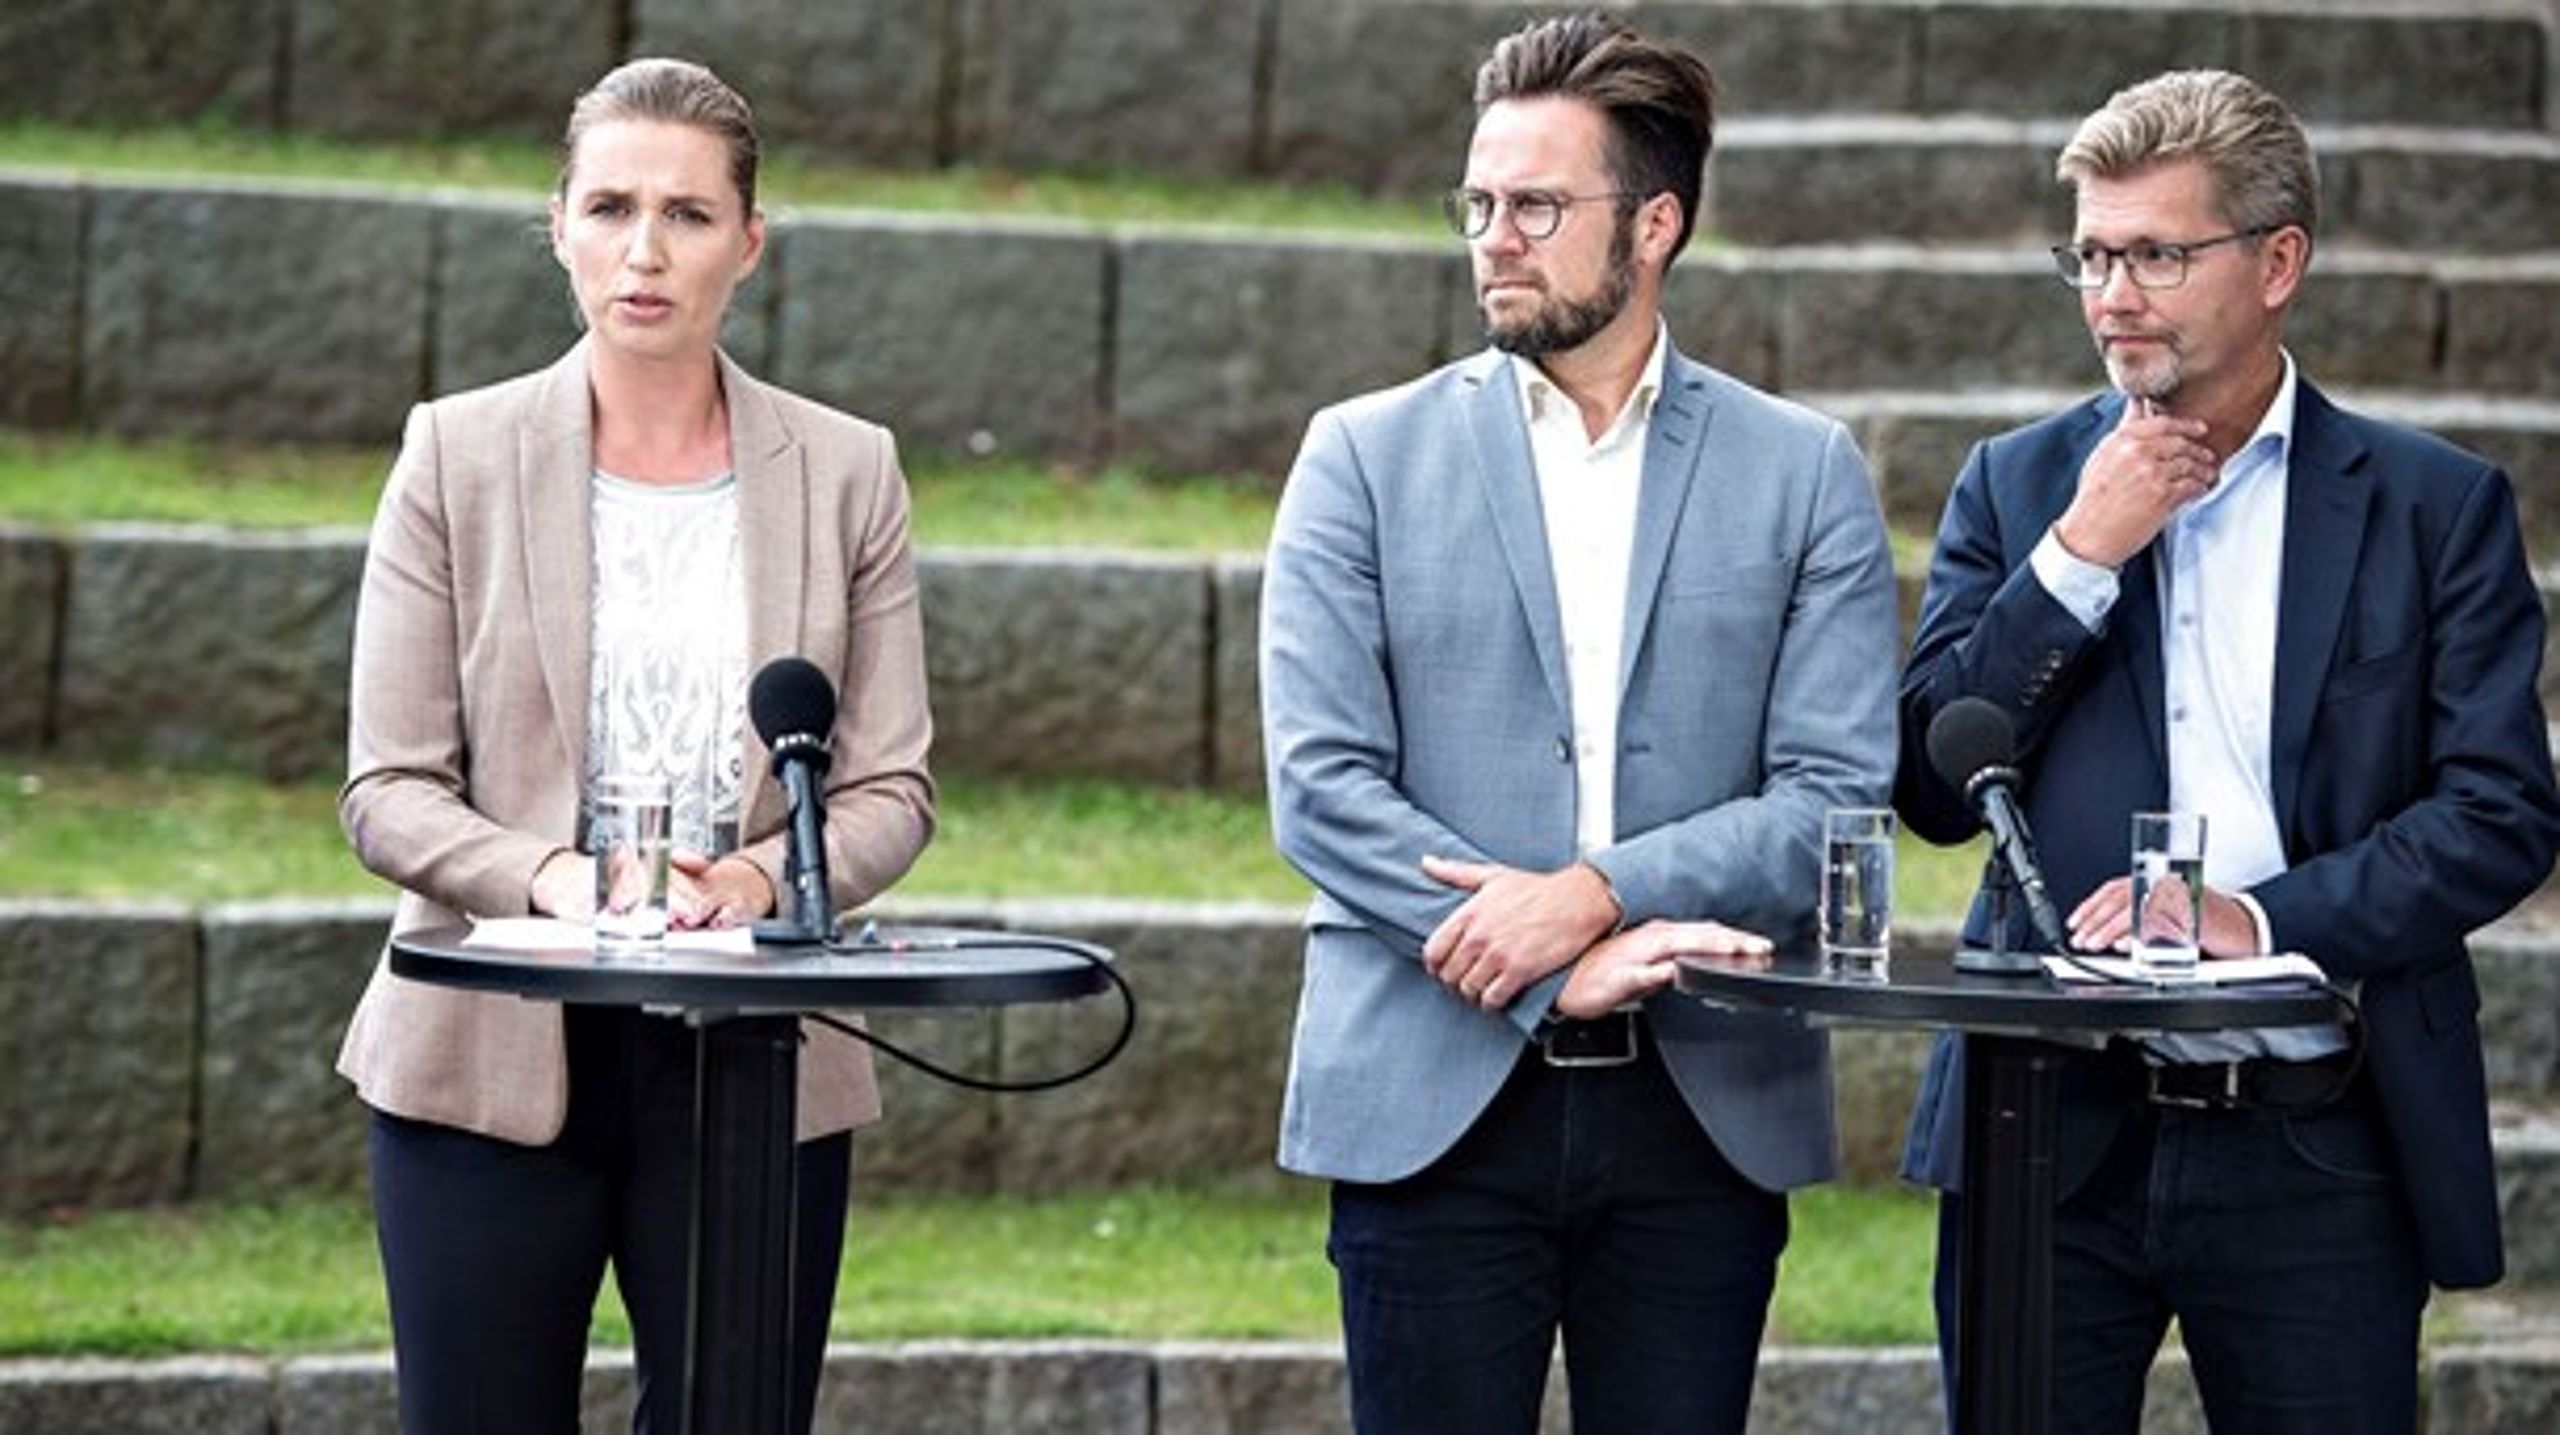 Odenses borgmester, Peter Rahbæk Juel (S), vil som mange af sine kollegaer i resten af landet have regeringen til at gøre endeligt op med den tidligere VK-regerings skattestop og&nbsp;afskaffe det kommunale skatteloft.